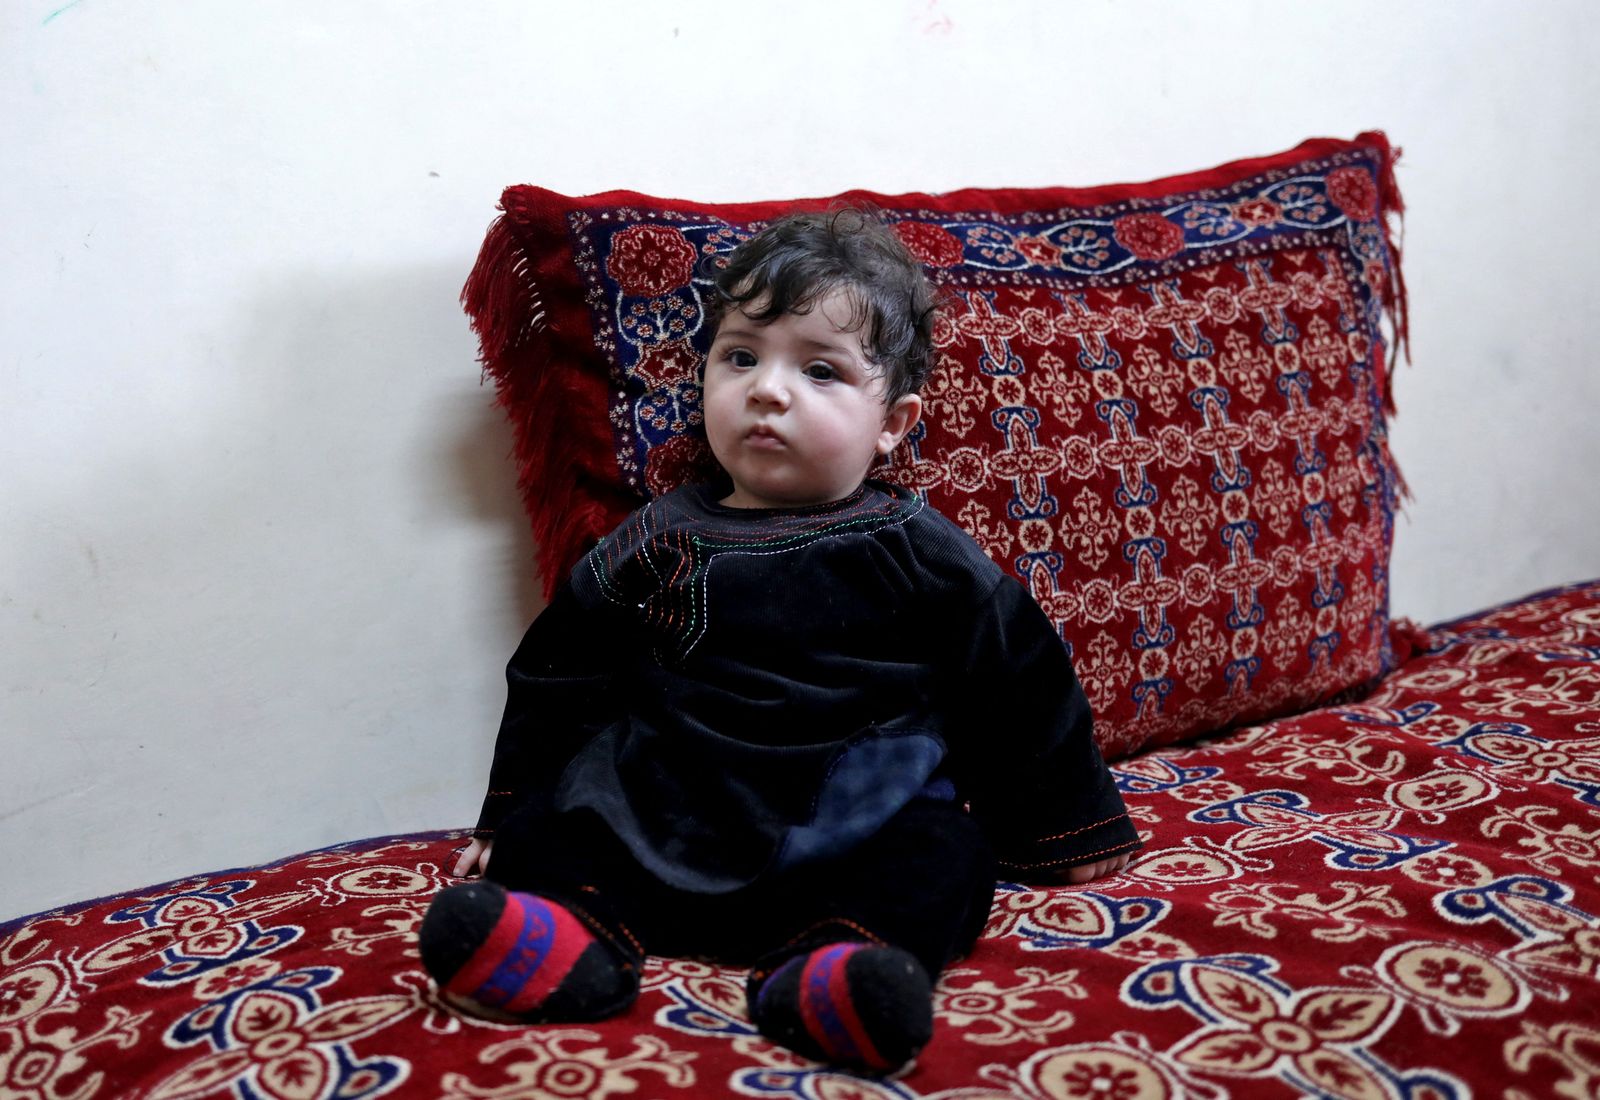 يظهر في هذه الصورة الطفل سهيل أحمدي جالساً في منزل حامد صافي في كابول 7 يناير 2022 - REUTERS